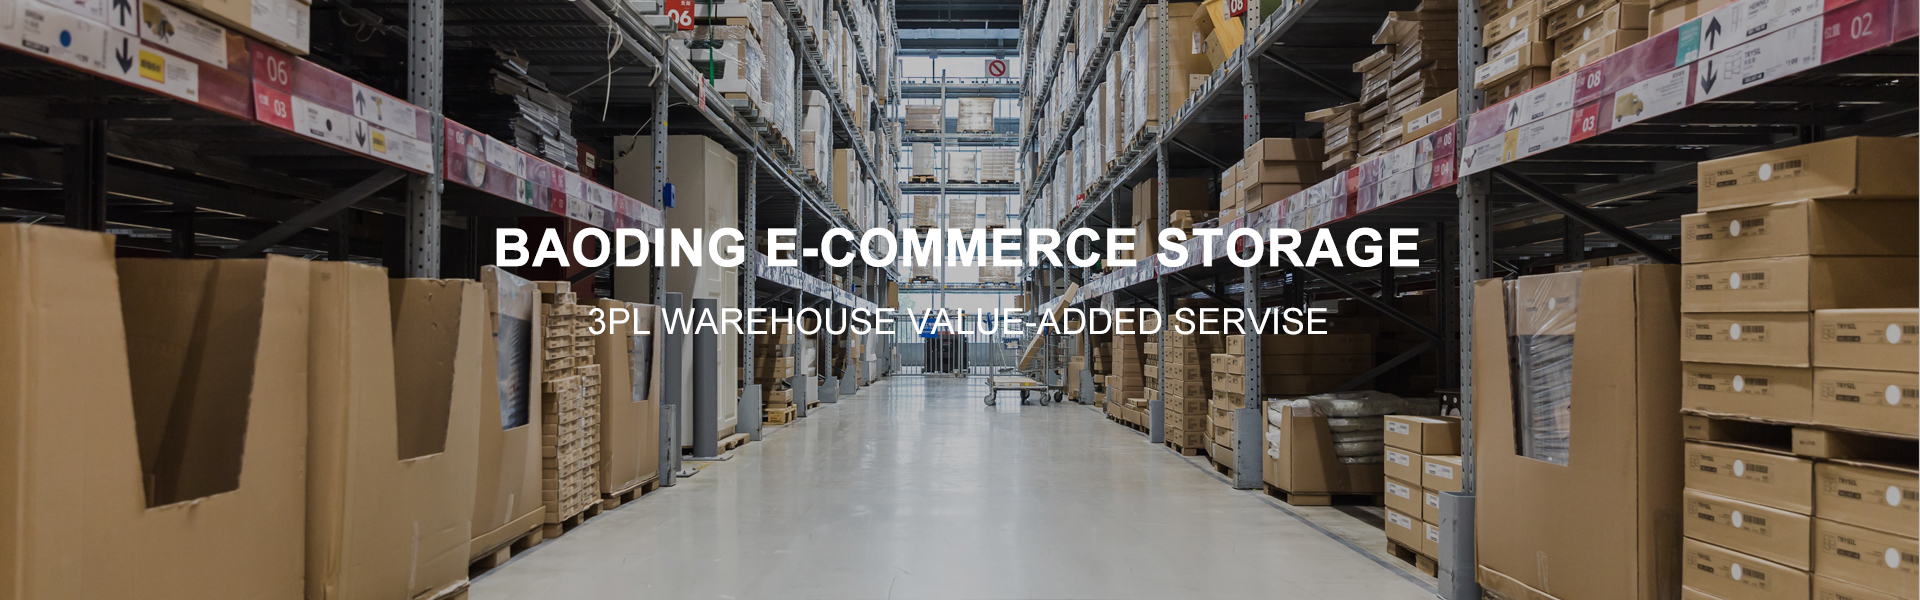 Baoding e-commerce warehouse management